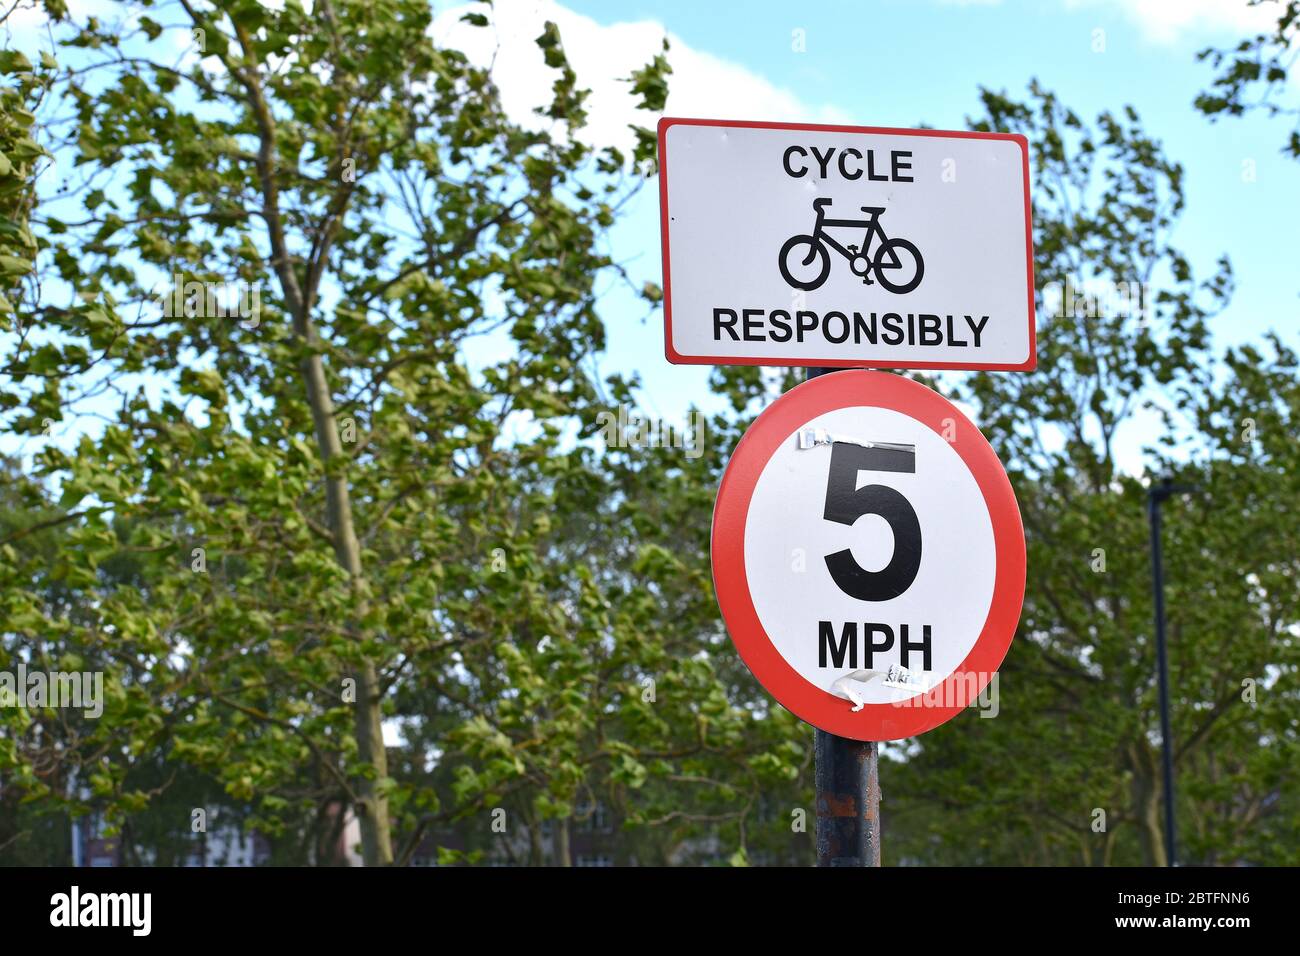 Il cartello britannico indica responsabilmente il limite di velocità di 8 km all'ora in un parco. I cittadini si sposteranno in bicicletta o potranno godersi un piacevole giro in città Foto Stock